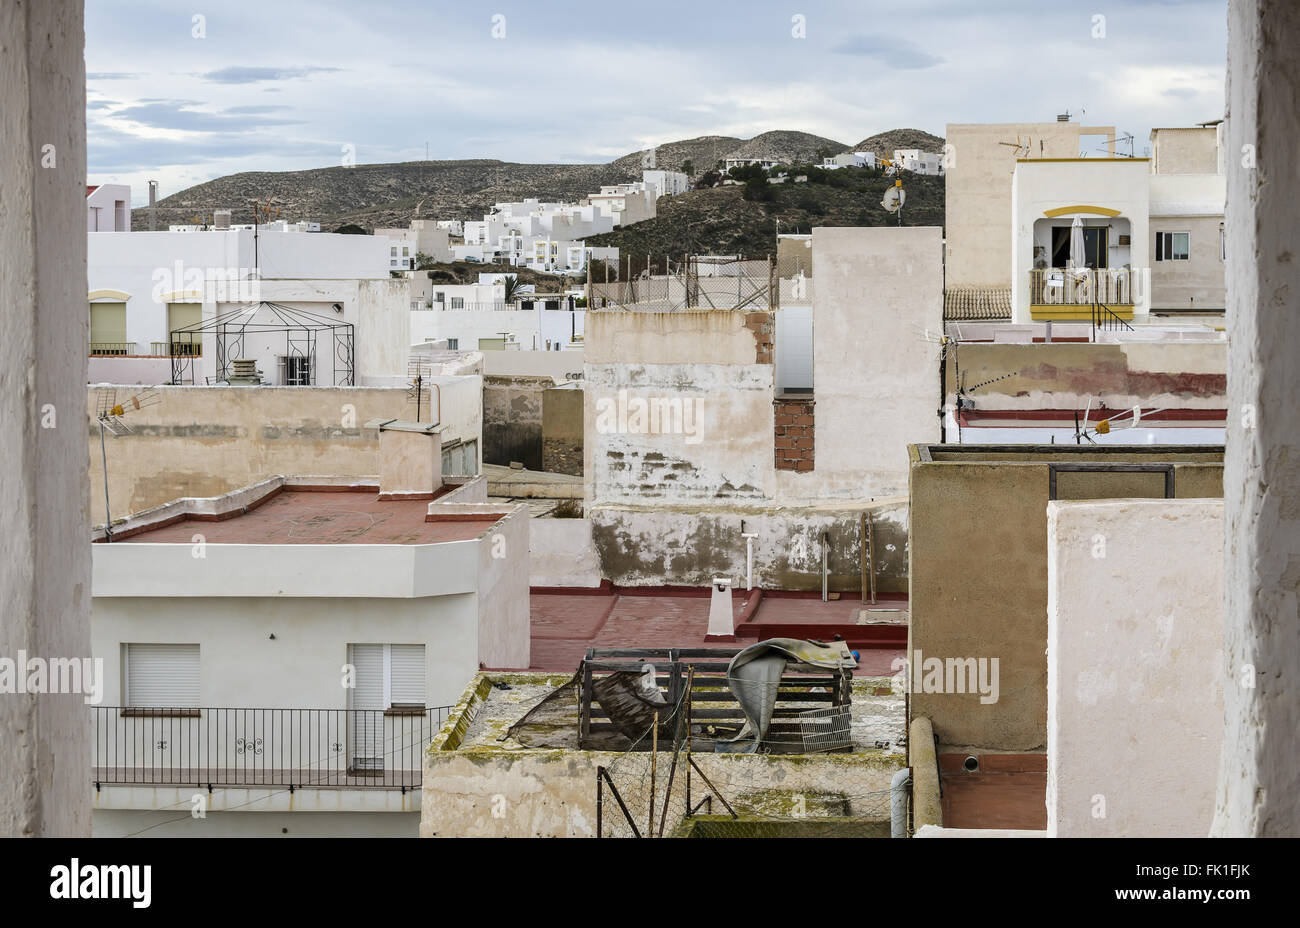 Una vista de casas blancas de Carboneras municipio, provincia de Almería, España Foto de stock